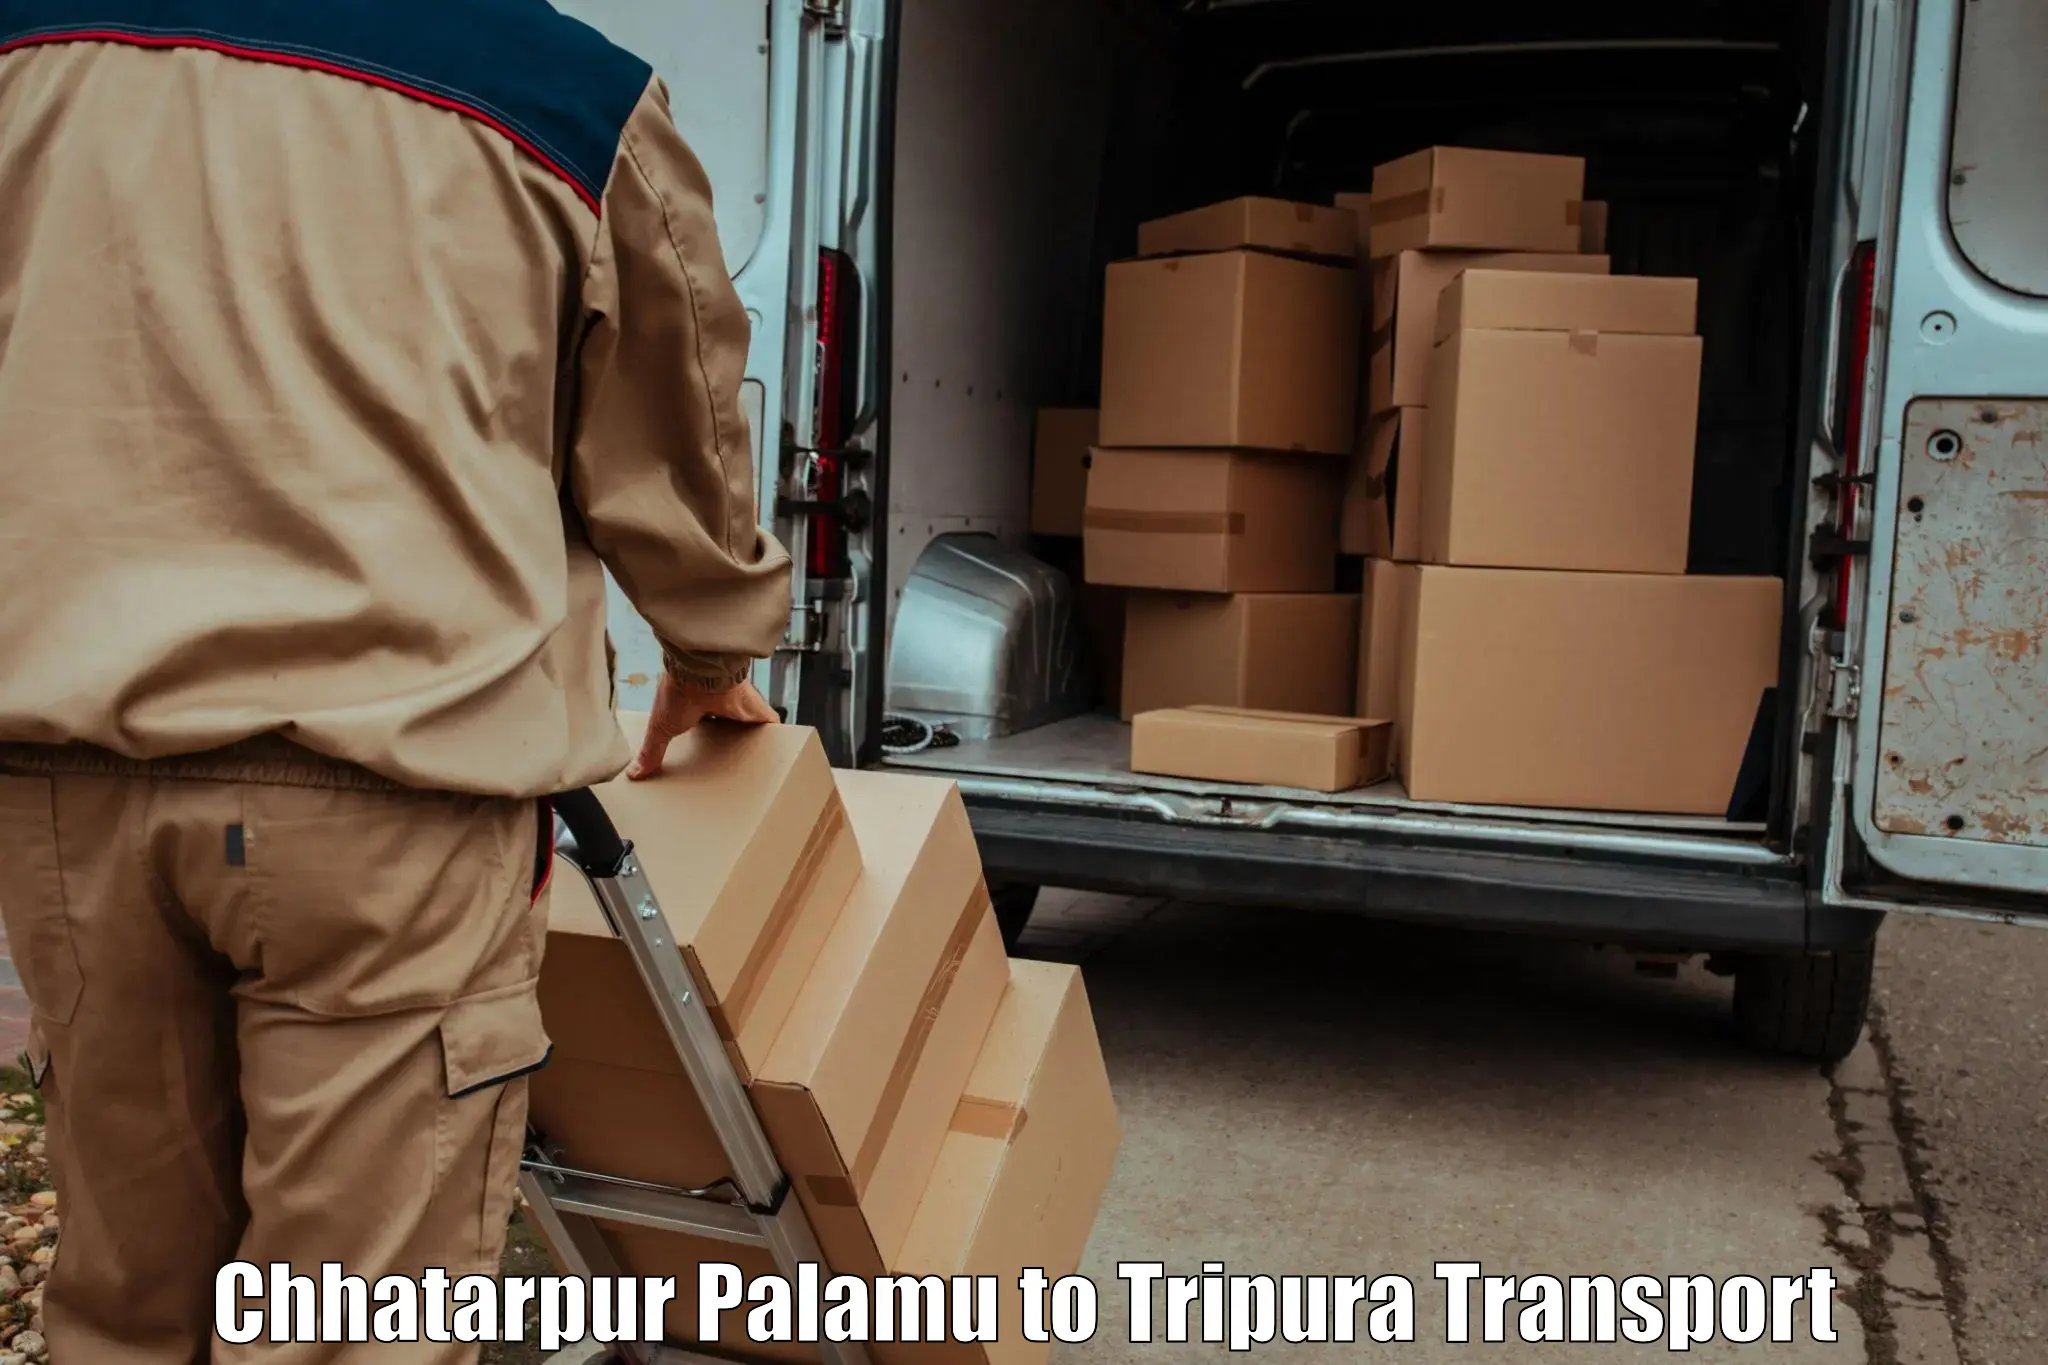 Shipping partner Chhatarpur Palamu to Ambassa